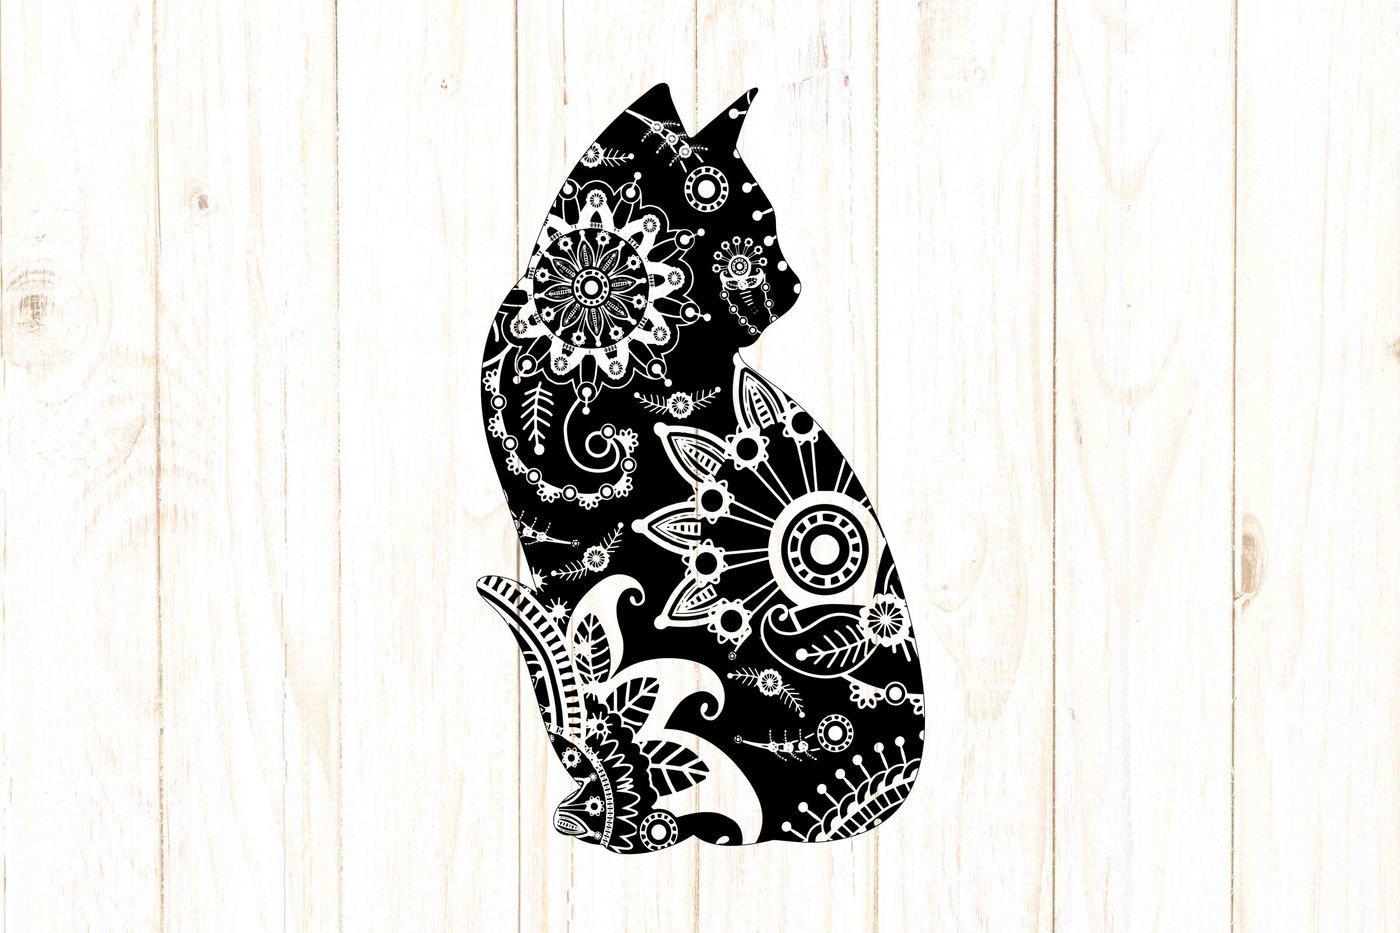 Mandala Layered Cat Svg - Free SVG Cut File